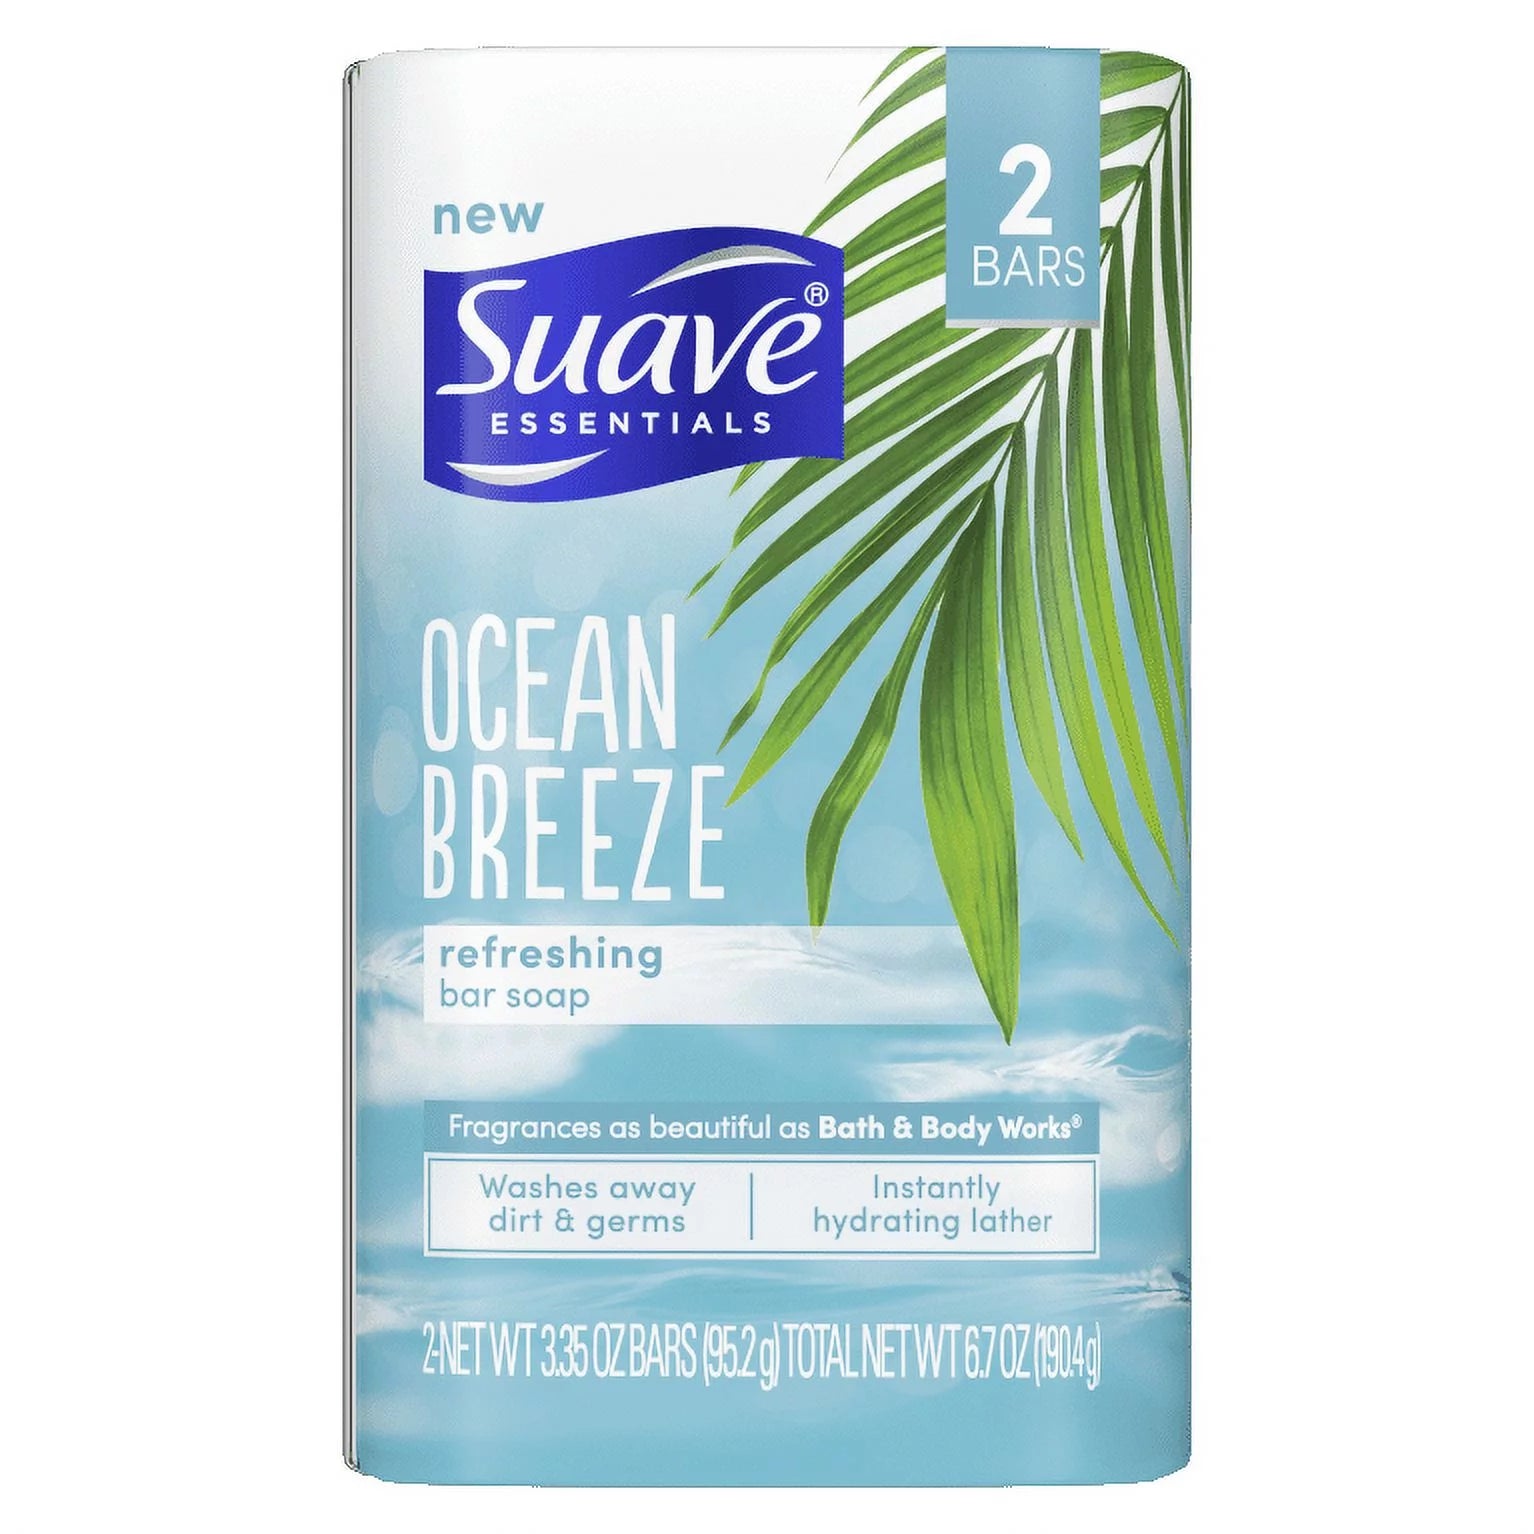 Suave Essentials Ocean Breeze Refreshing Bar Soap, 2 Net WT 3.35 oz Bars